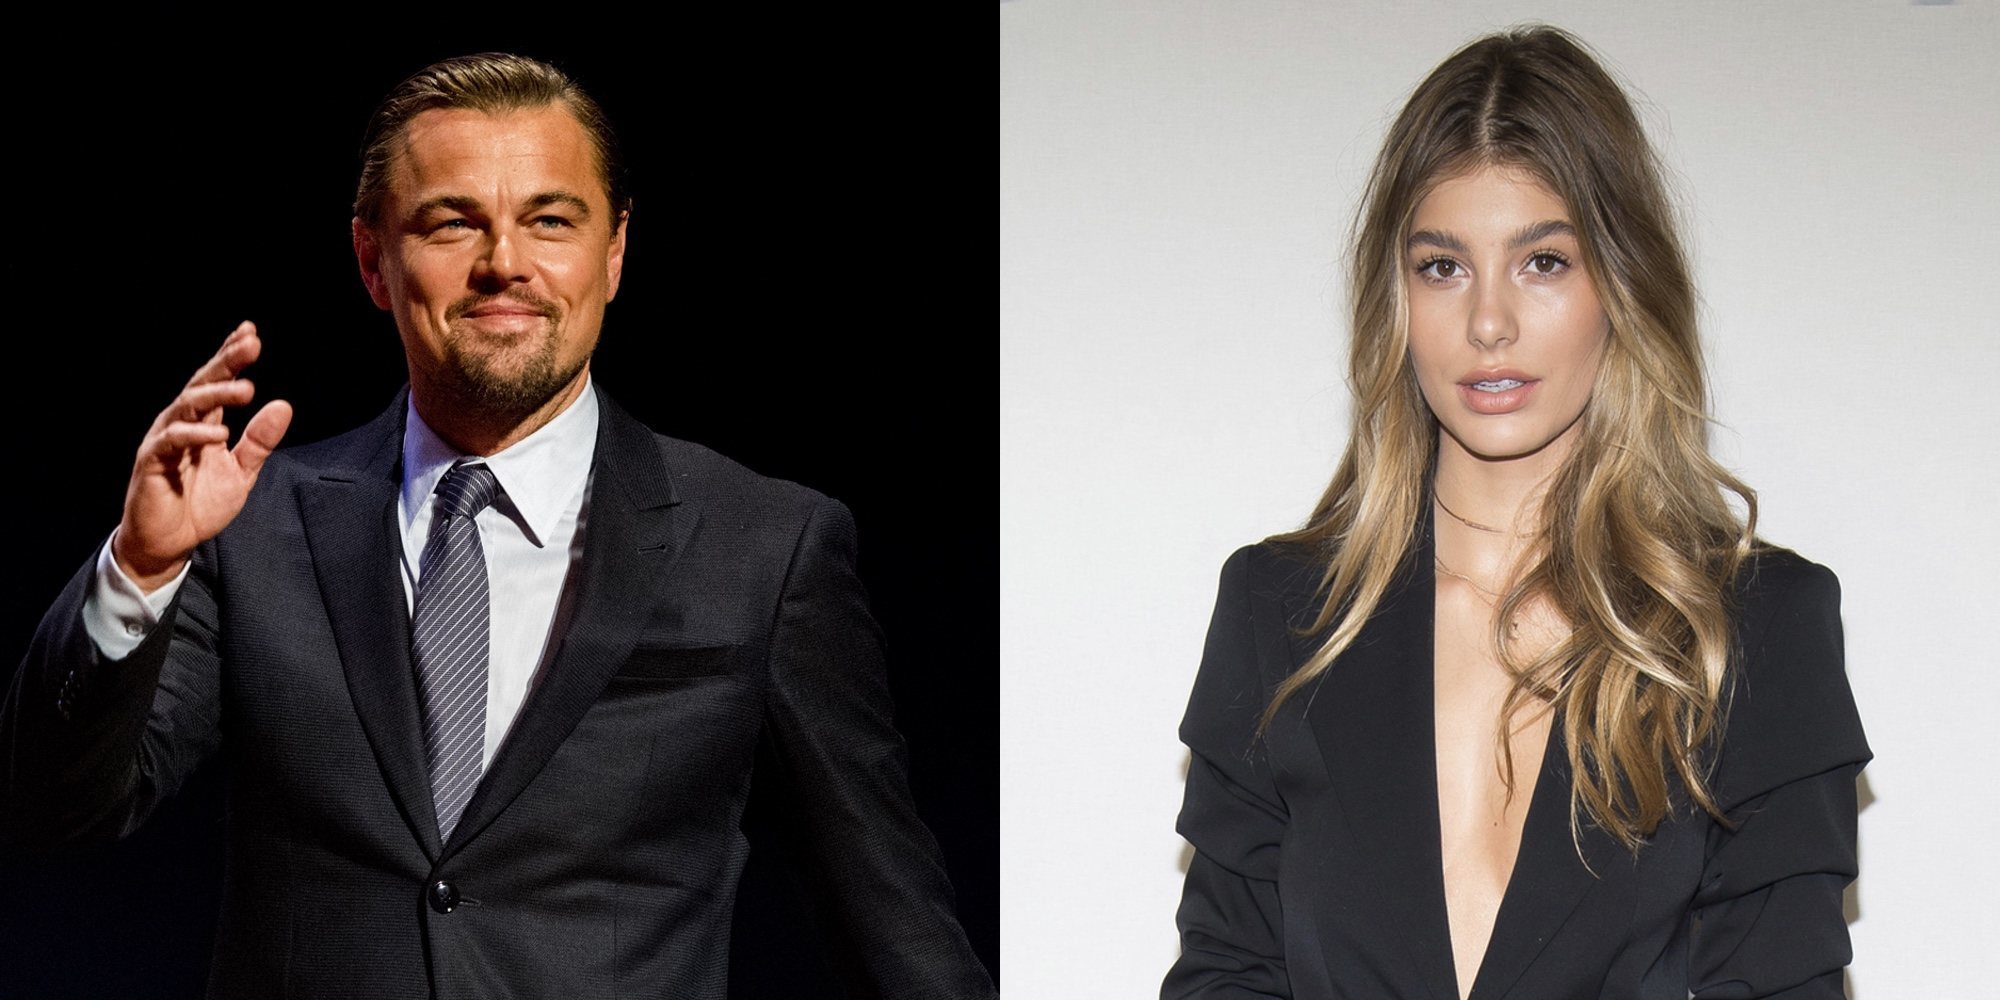 Leonardo DiCaprio y Camila Morrone, pillados juntos haciéndose arrumacos